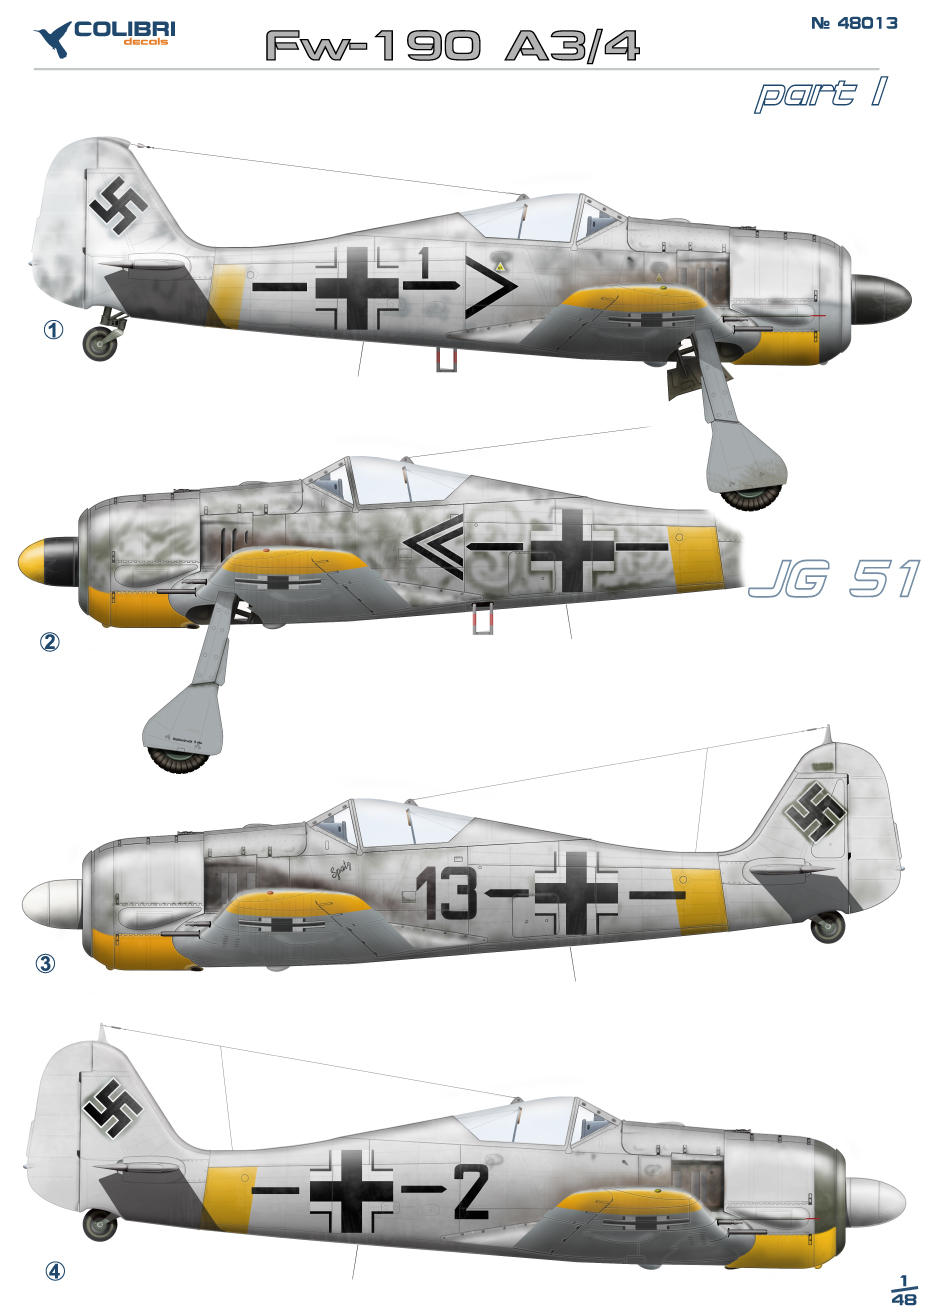 Decal 1/48 Fw-190 A3 Jg 51 part I (Colibri Decals)